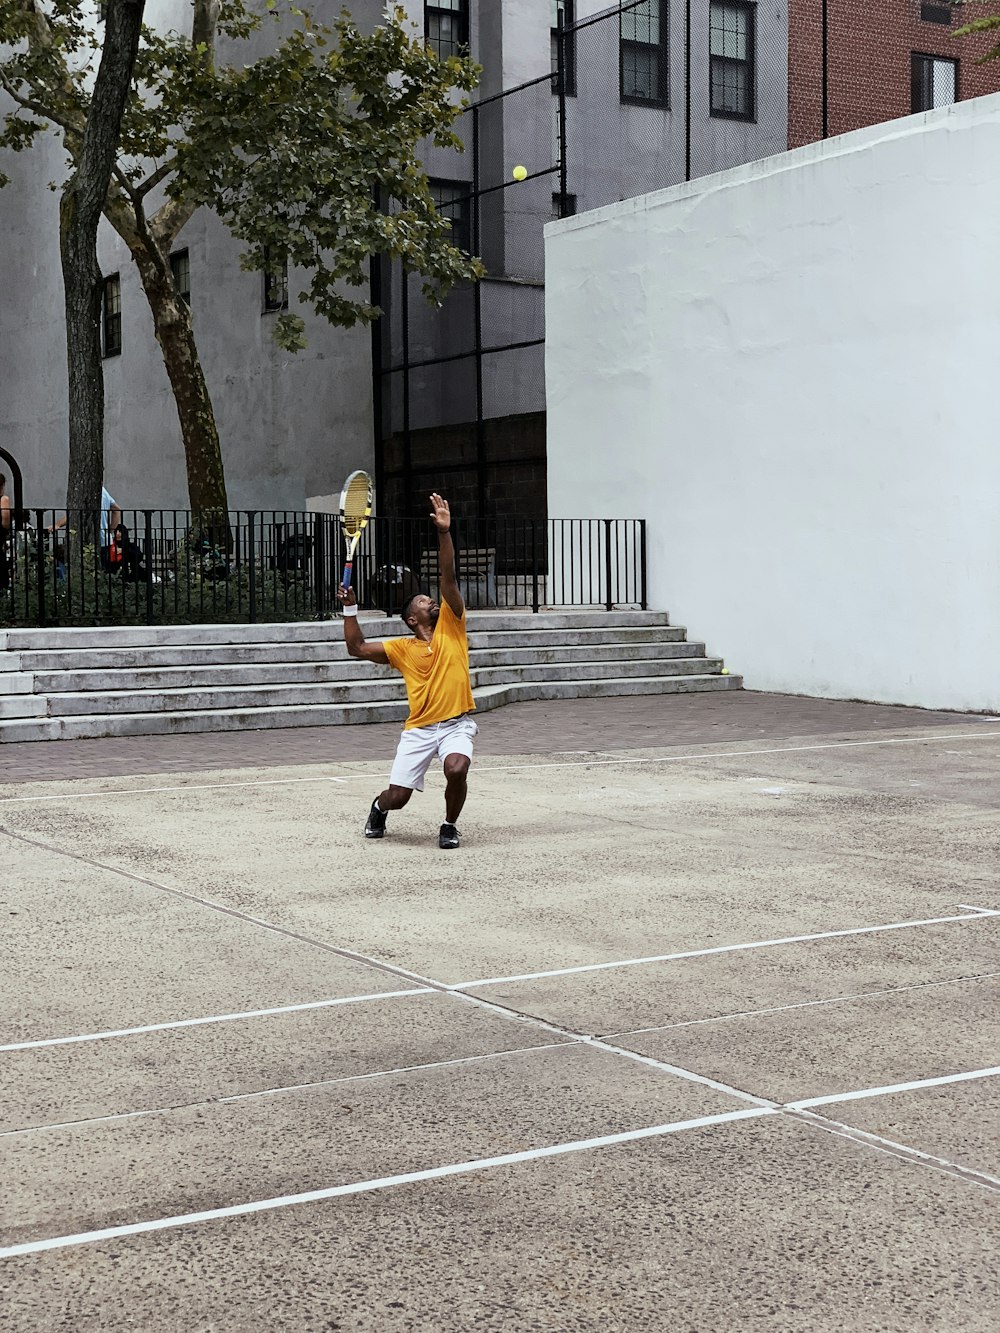 man wearing yellow shirt playing tennis